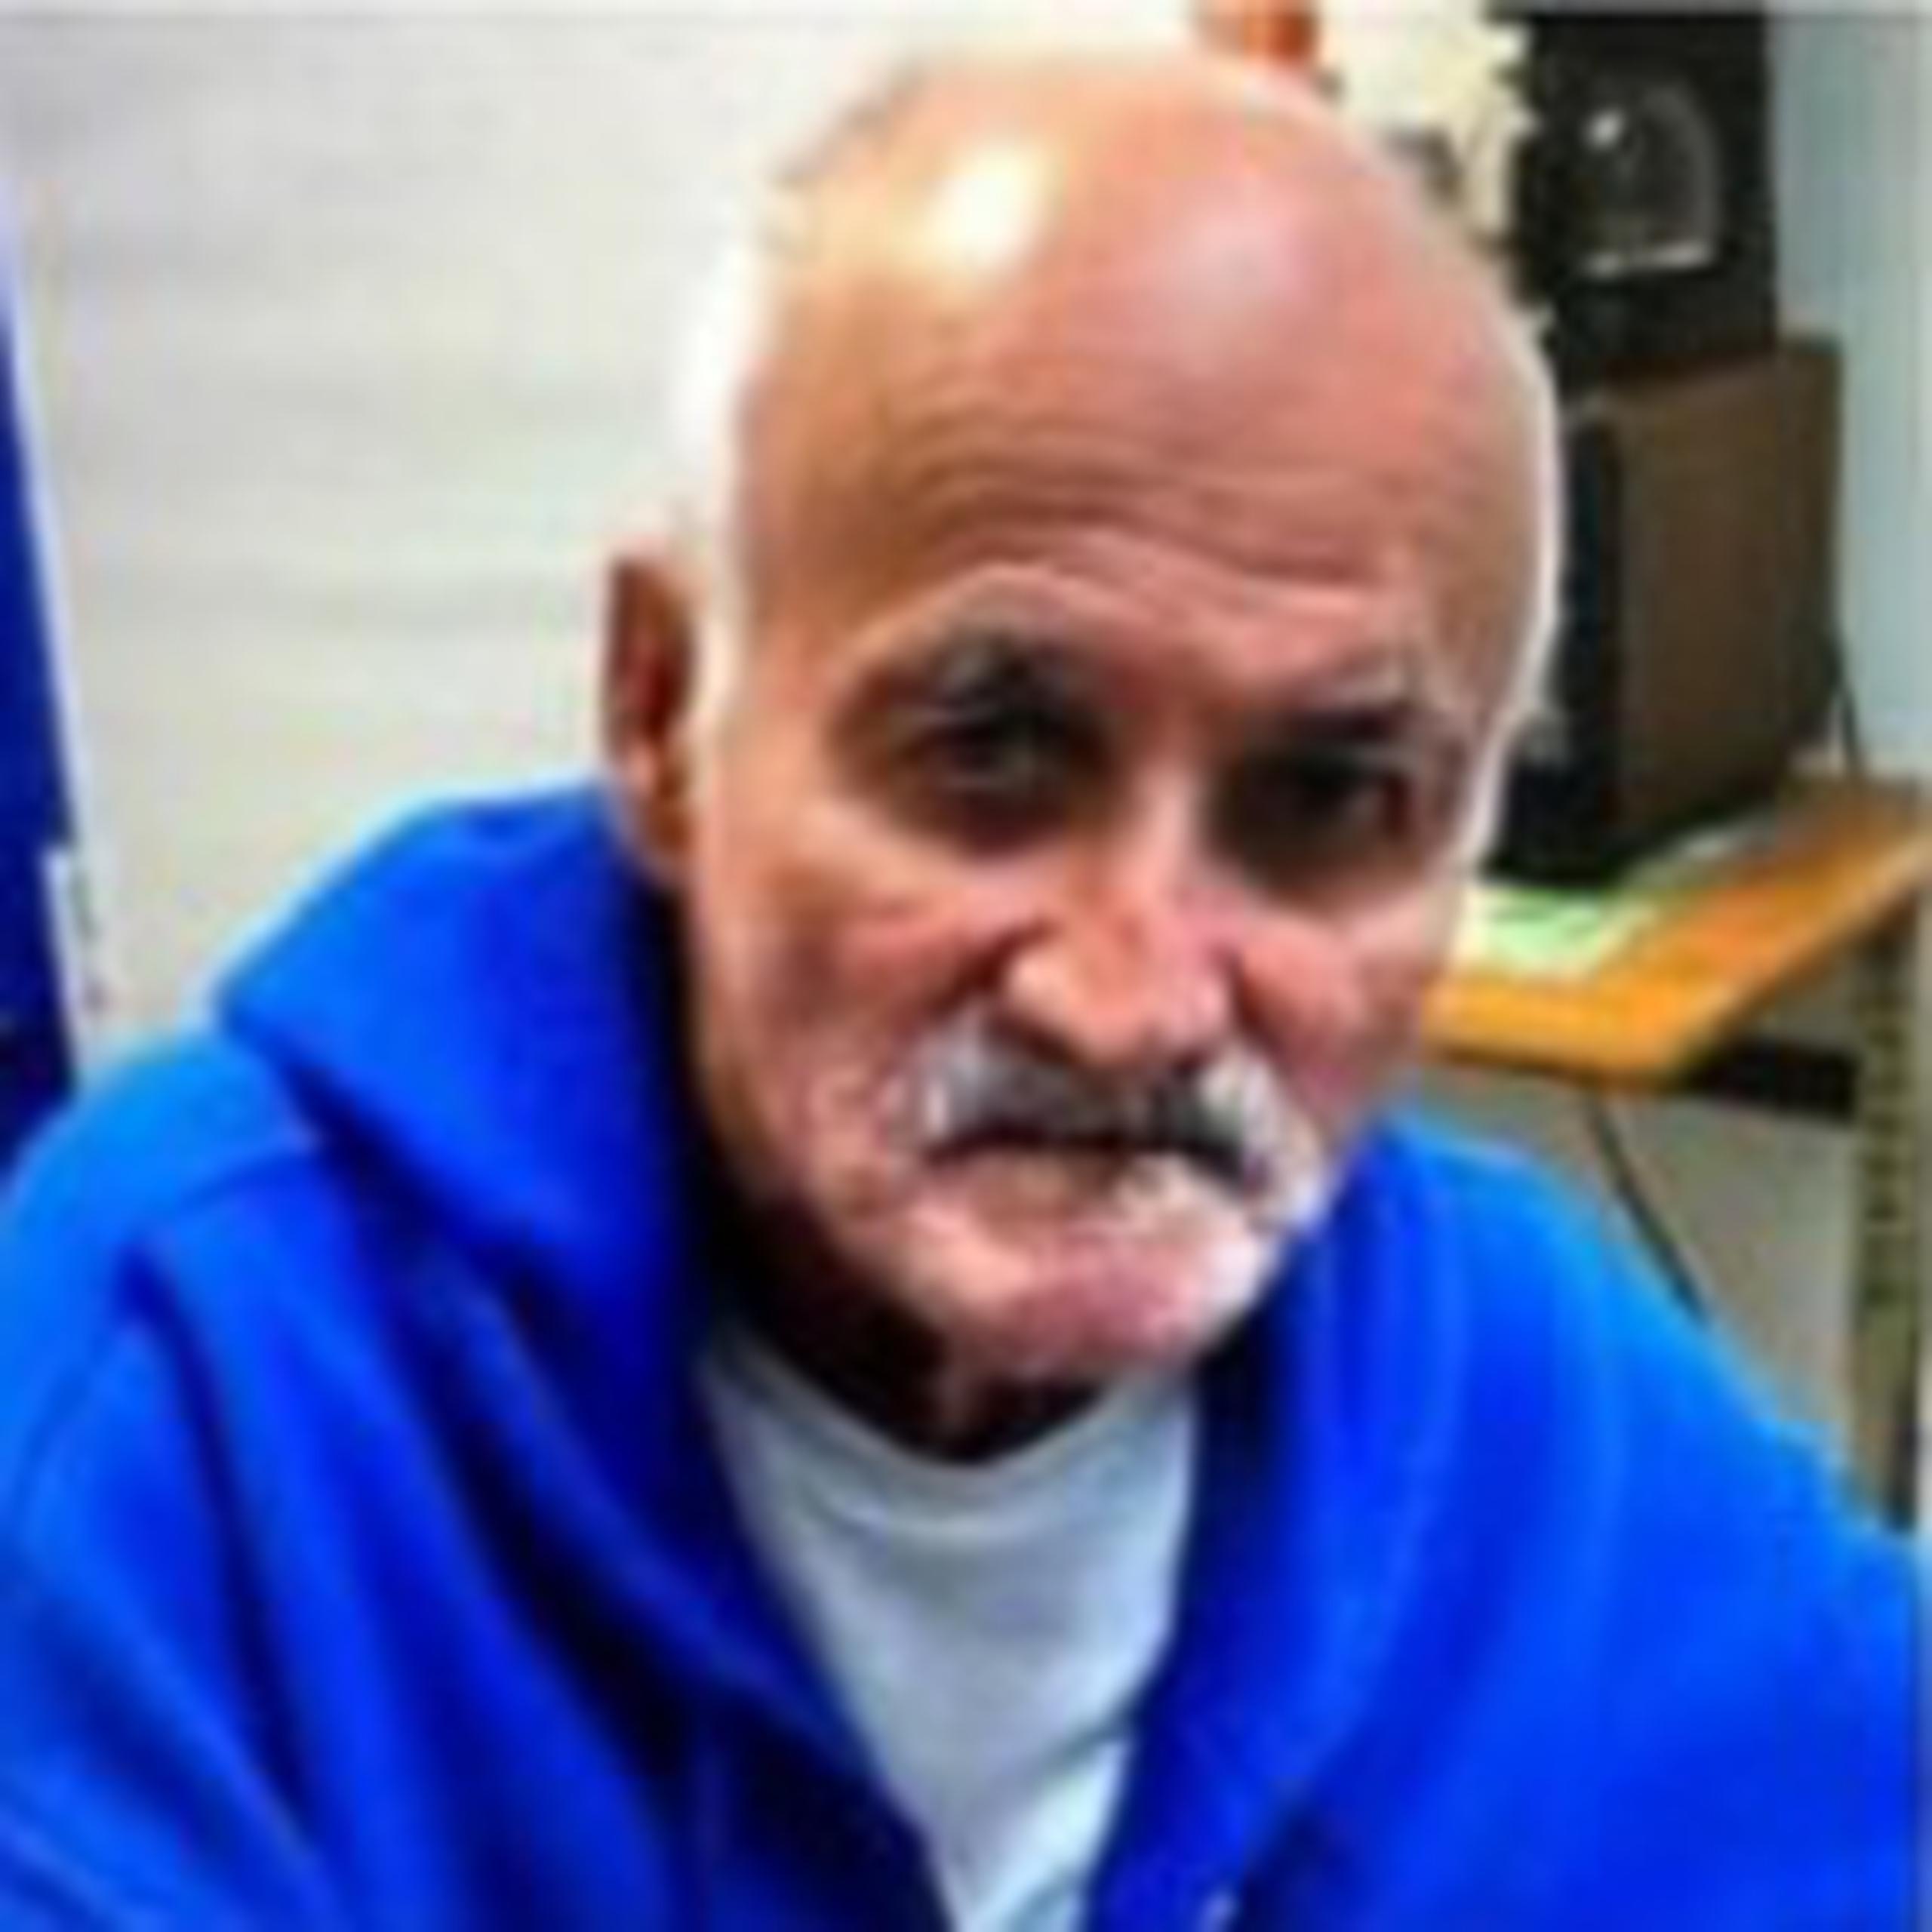 Rubén Quiñones Segarra de 72 años, quien padece de Alzheimer, se encuentra desaparecido desde 5 de marzo, cuando fue visto por última vez al salir de su residencia localizada en la calle San Martín de la urbanización Estancias de San Pedro, en Fajardo.